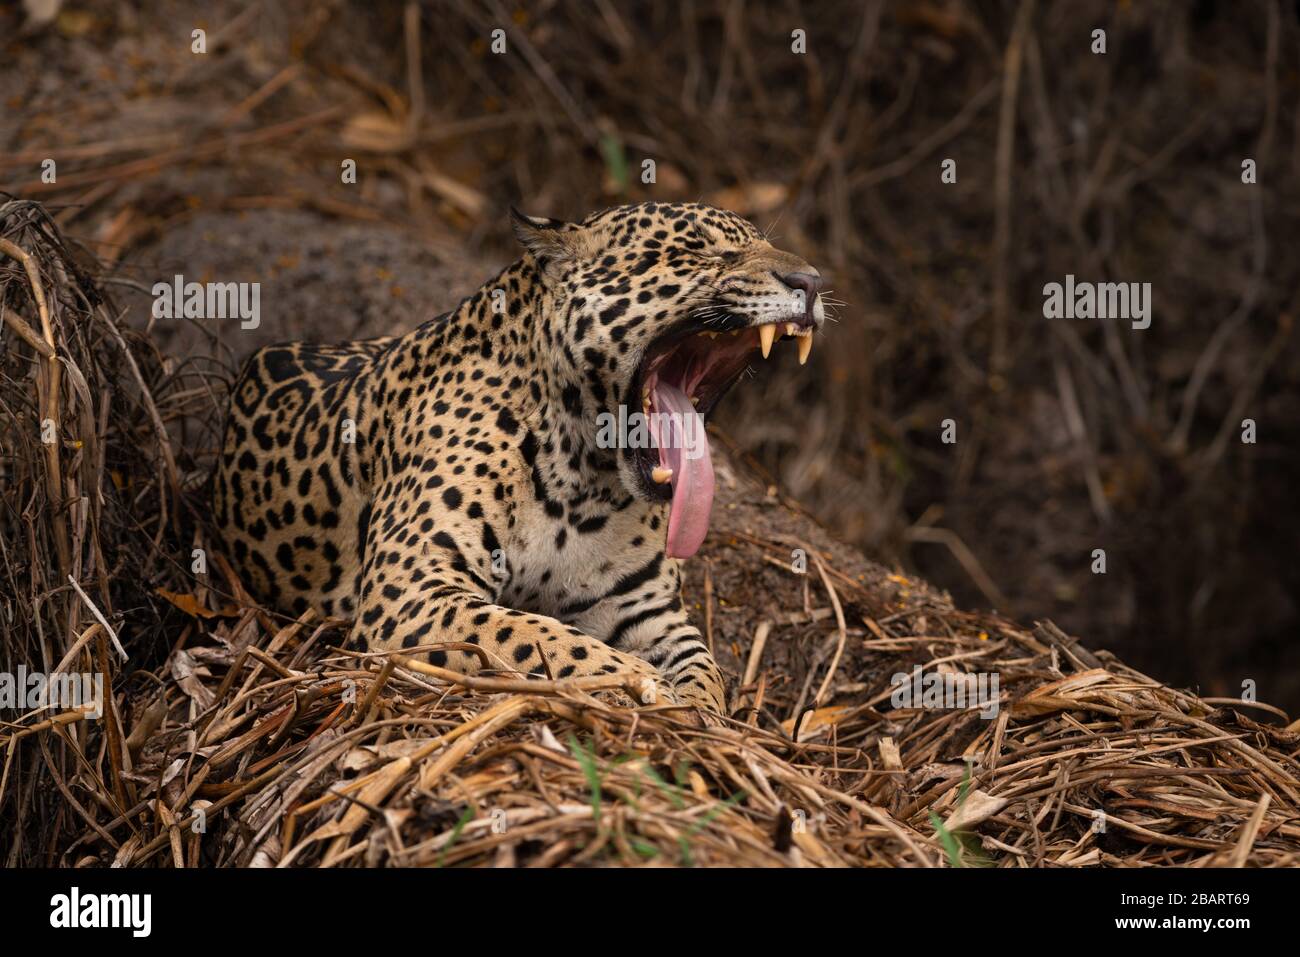 Wild Jaguar yawning, Pantanal, Brazil Stock Photo